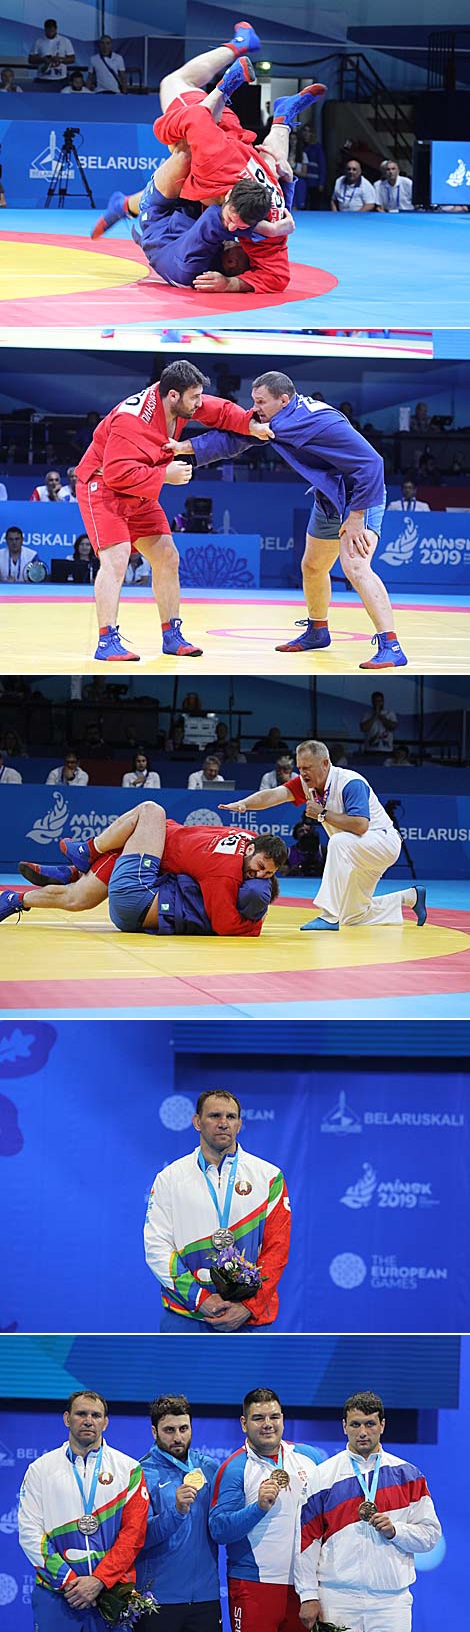 白罗斯运动员尤里•雷巴克（100公斤级）赢得第二届欧运会桑勃式摔跤锦标赛银牌